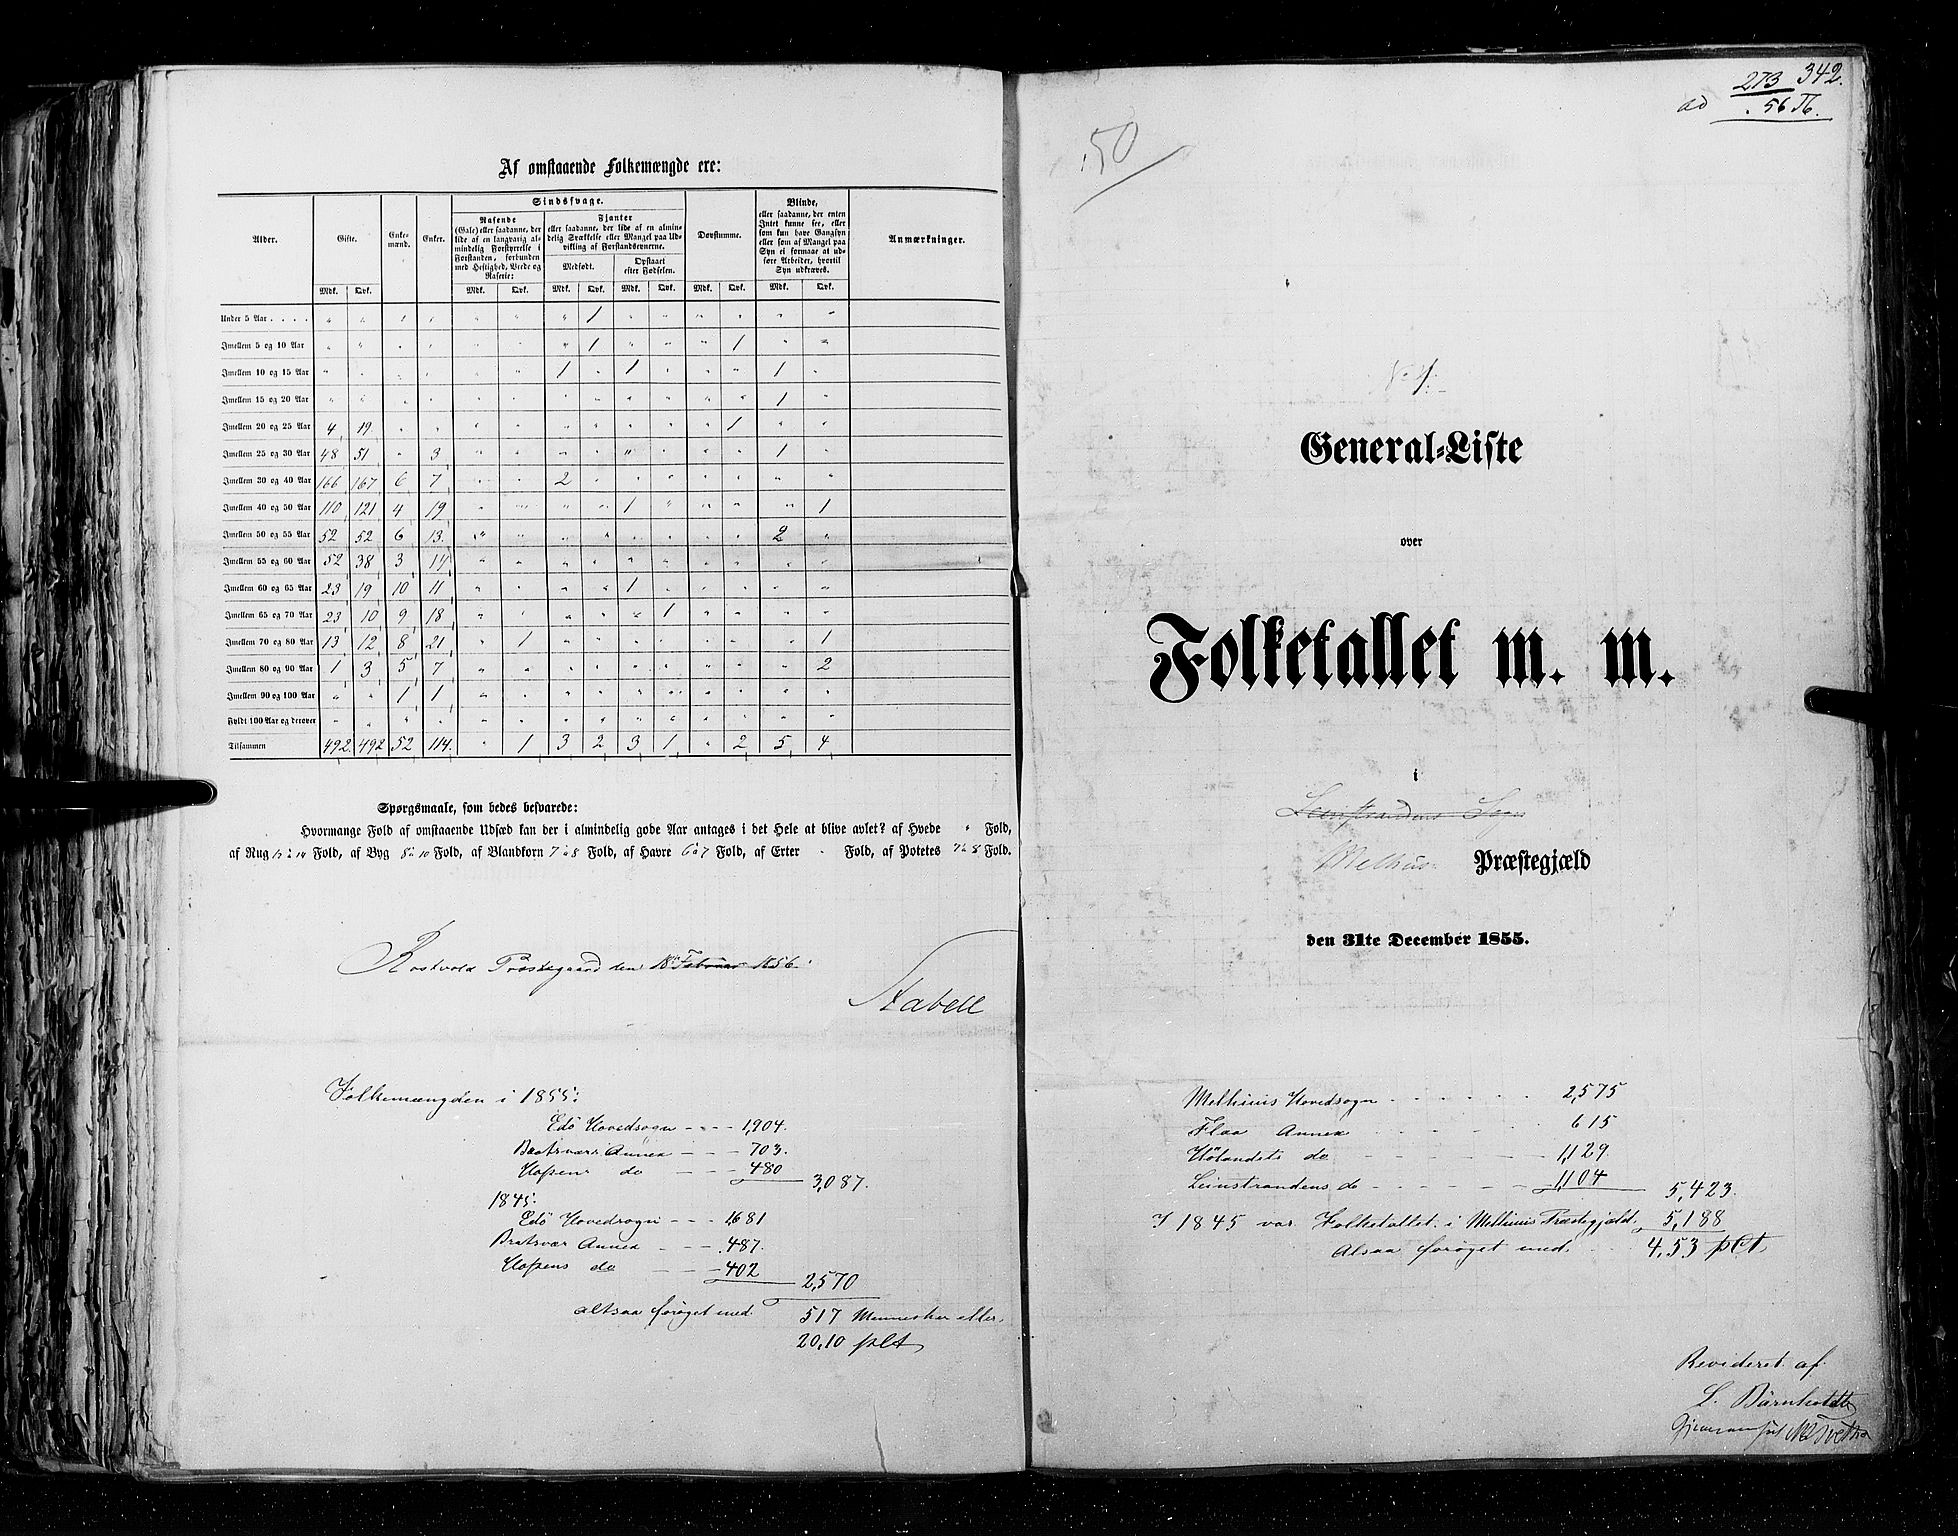 RA, Census 1855, vol. 5: Nordre Bergenhus amt, Romsdal amt og Søndre Trondhjem amt, 1855, p. 342